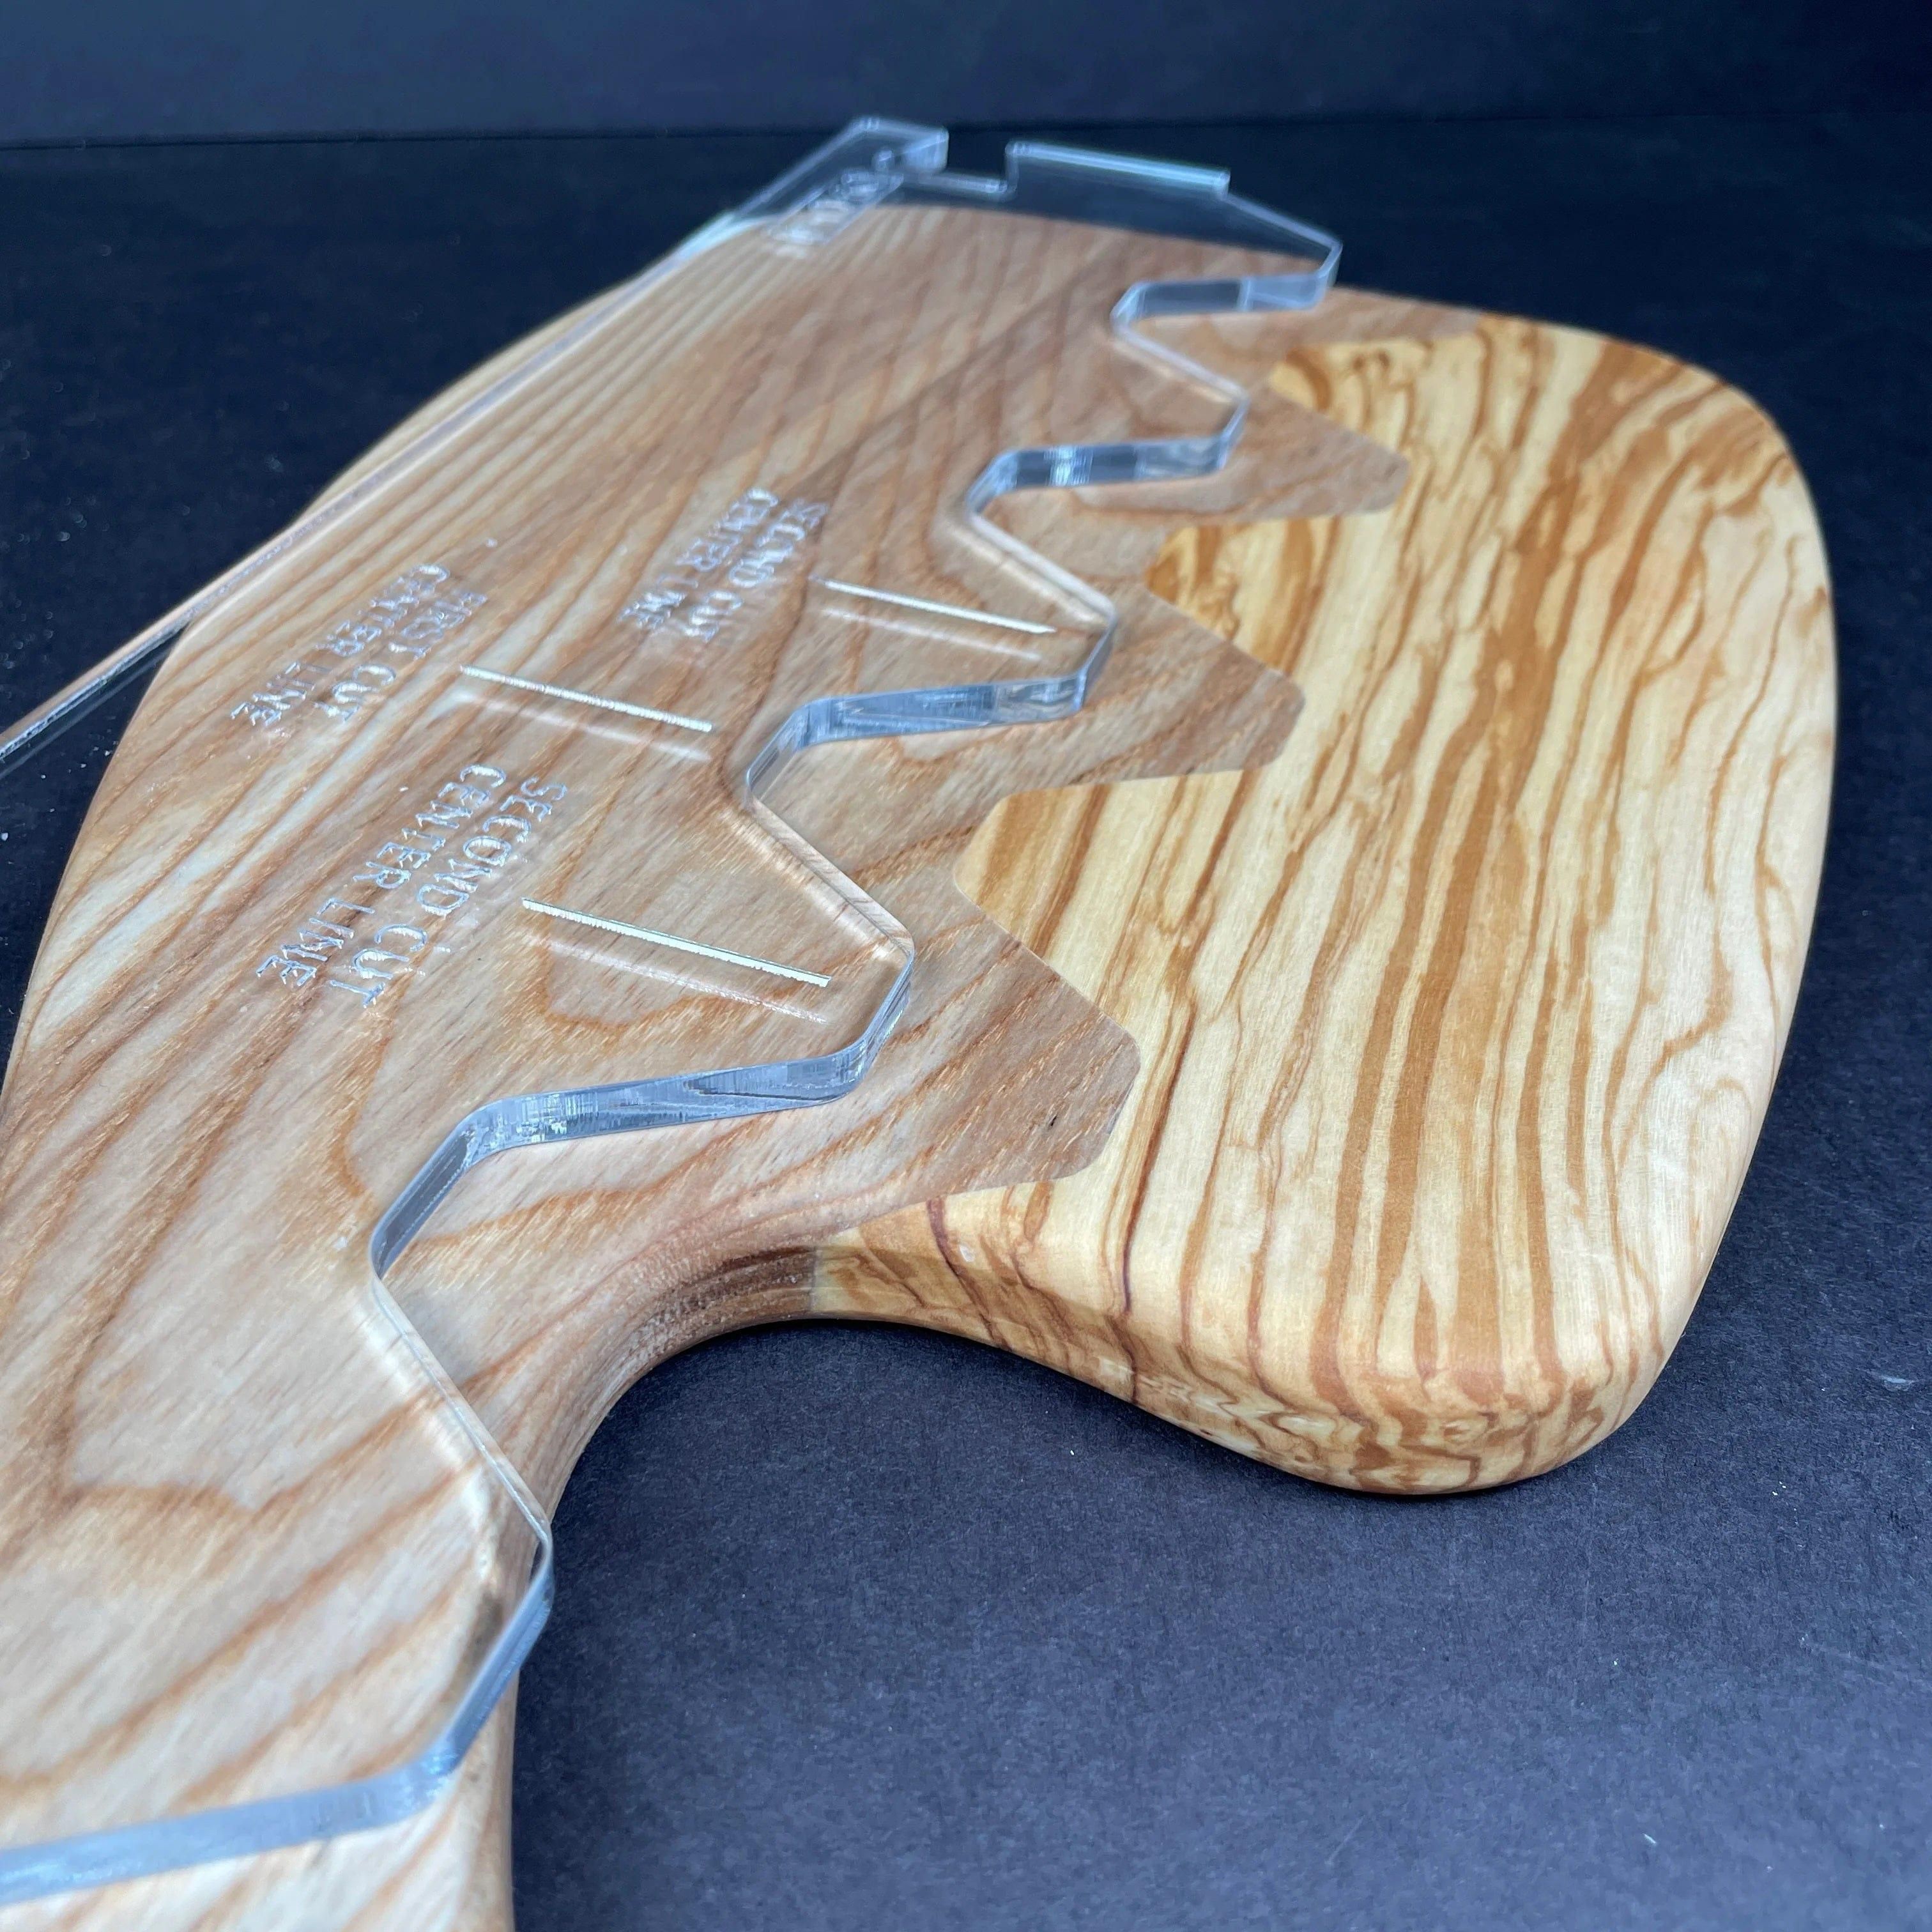 Gabarit acrylique Inserts X – Mon plateau de bois